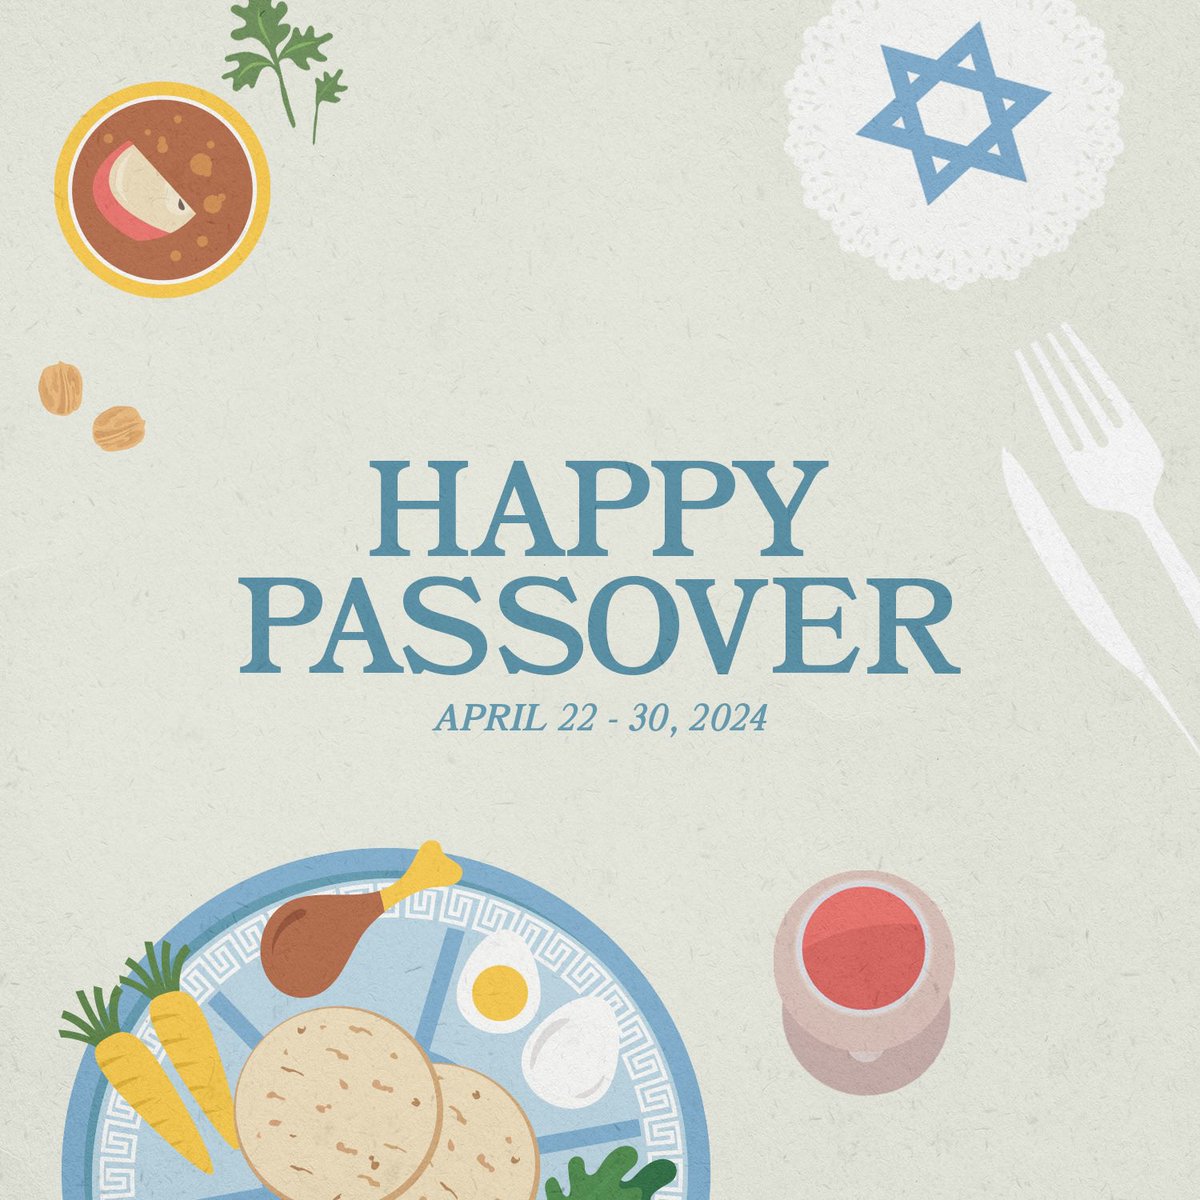 Happy Passover!🕍